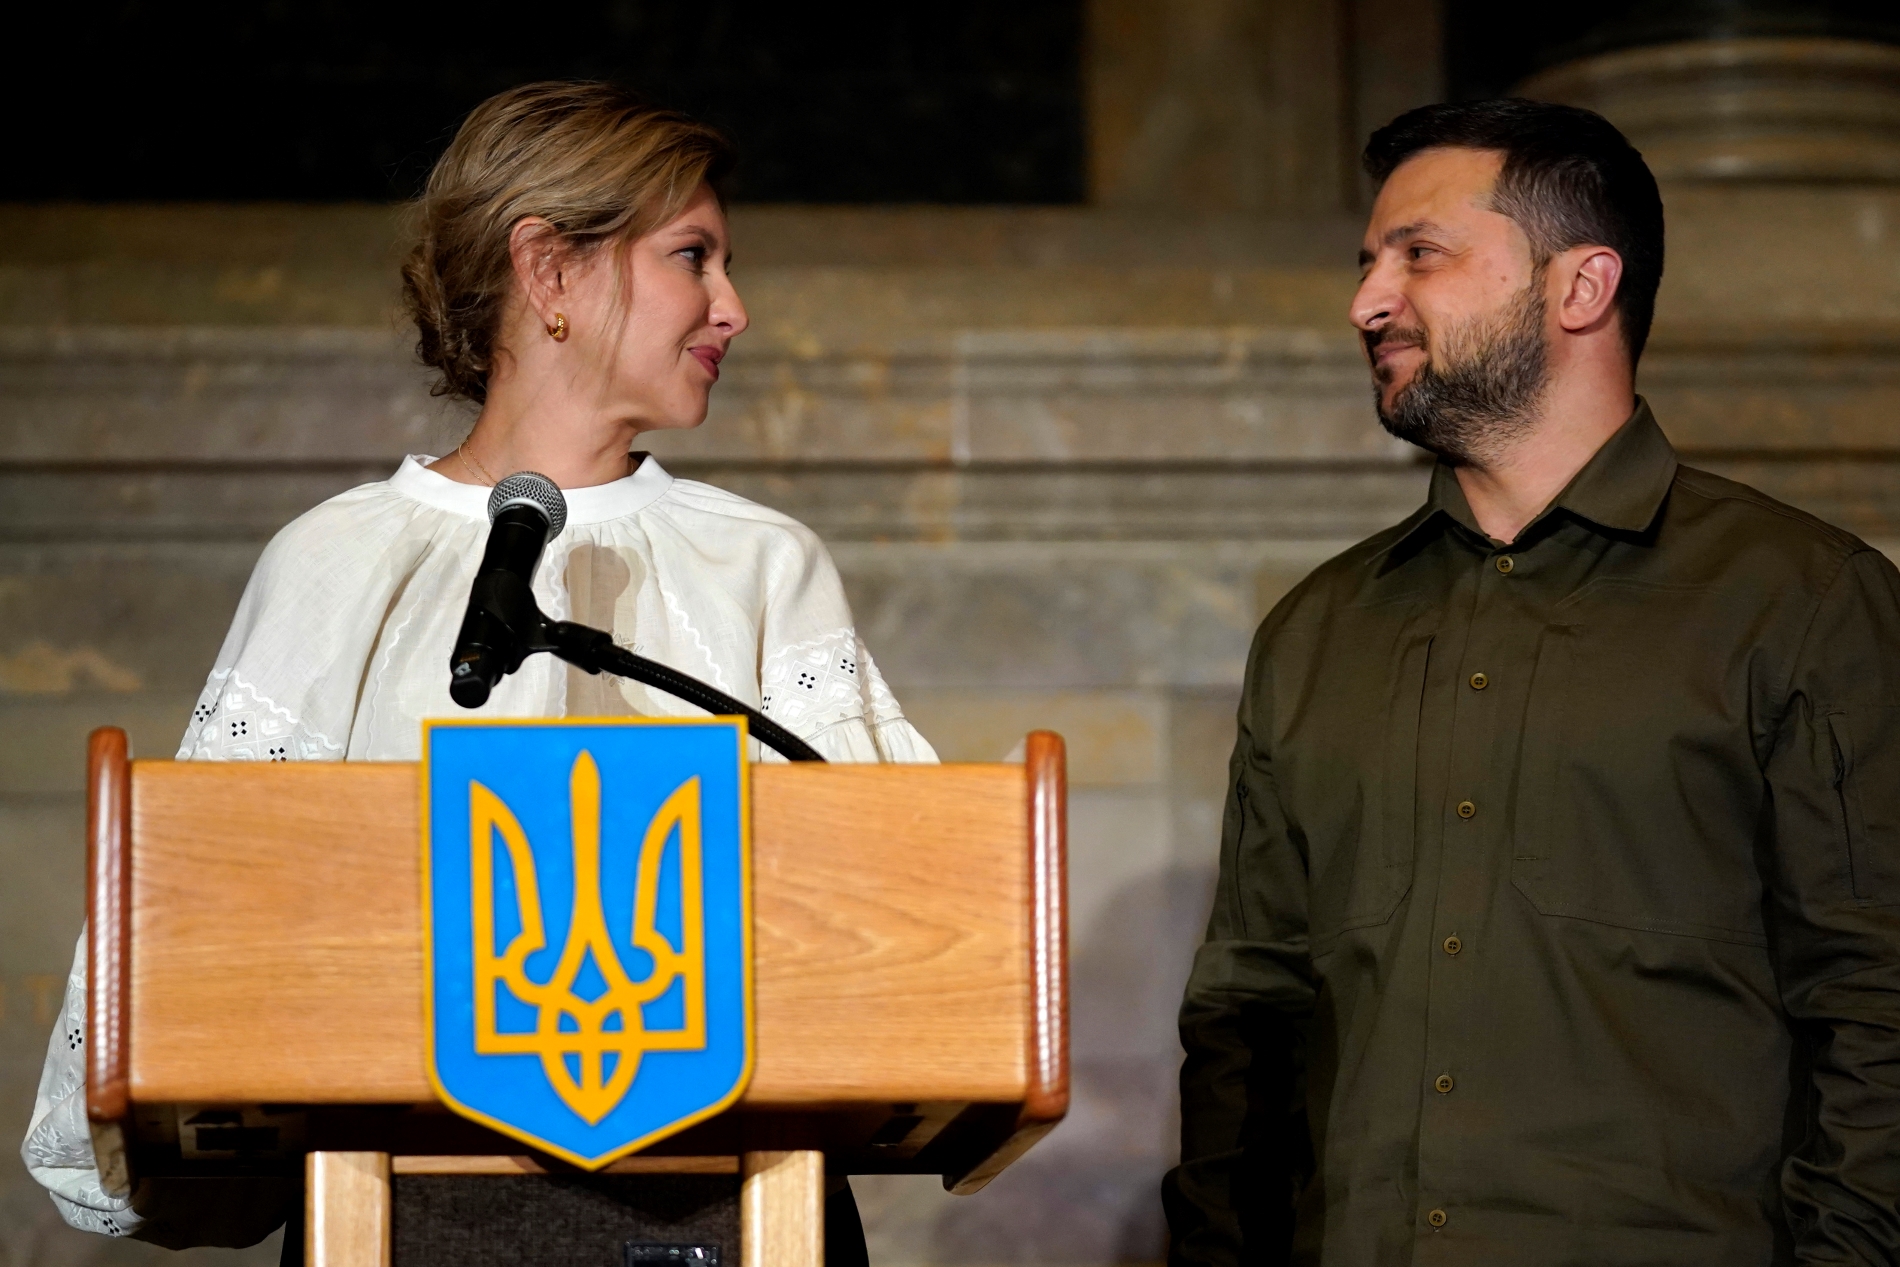 Δεν θα είναι ξανά υποψήφιος για τη προεδρία ο Ζελένσκι; Η δήλωση της πρώτης κυρίας και τα σενάρια για τις εκλογές στην Ουκρανία